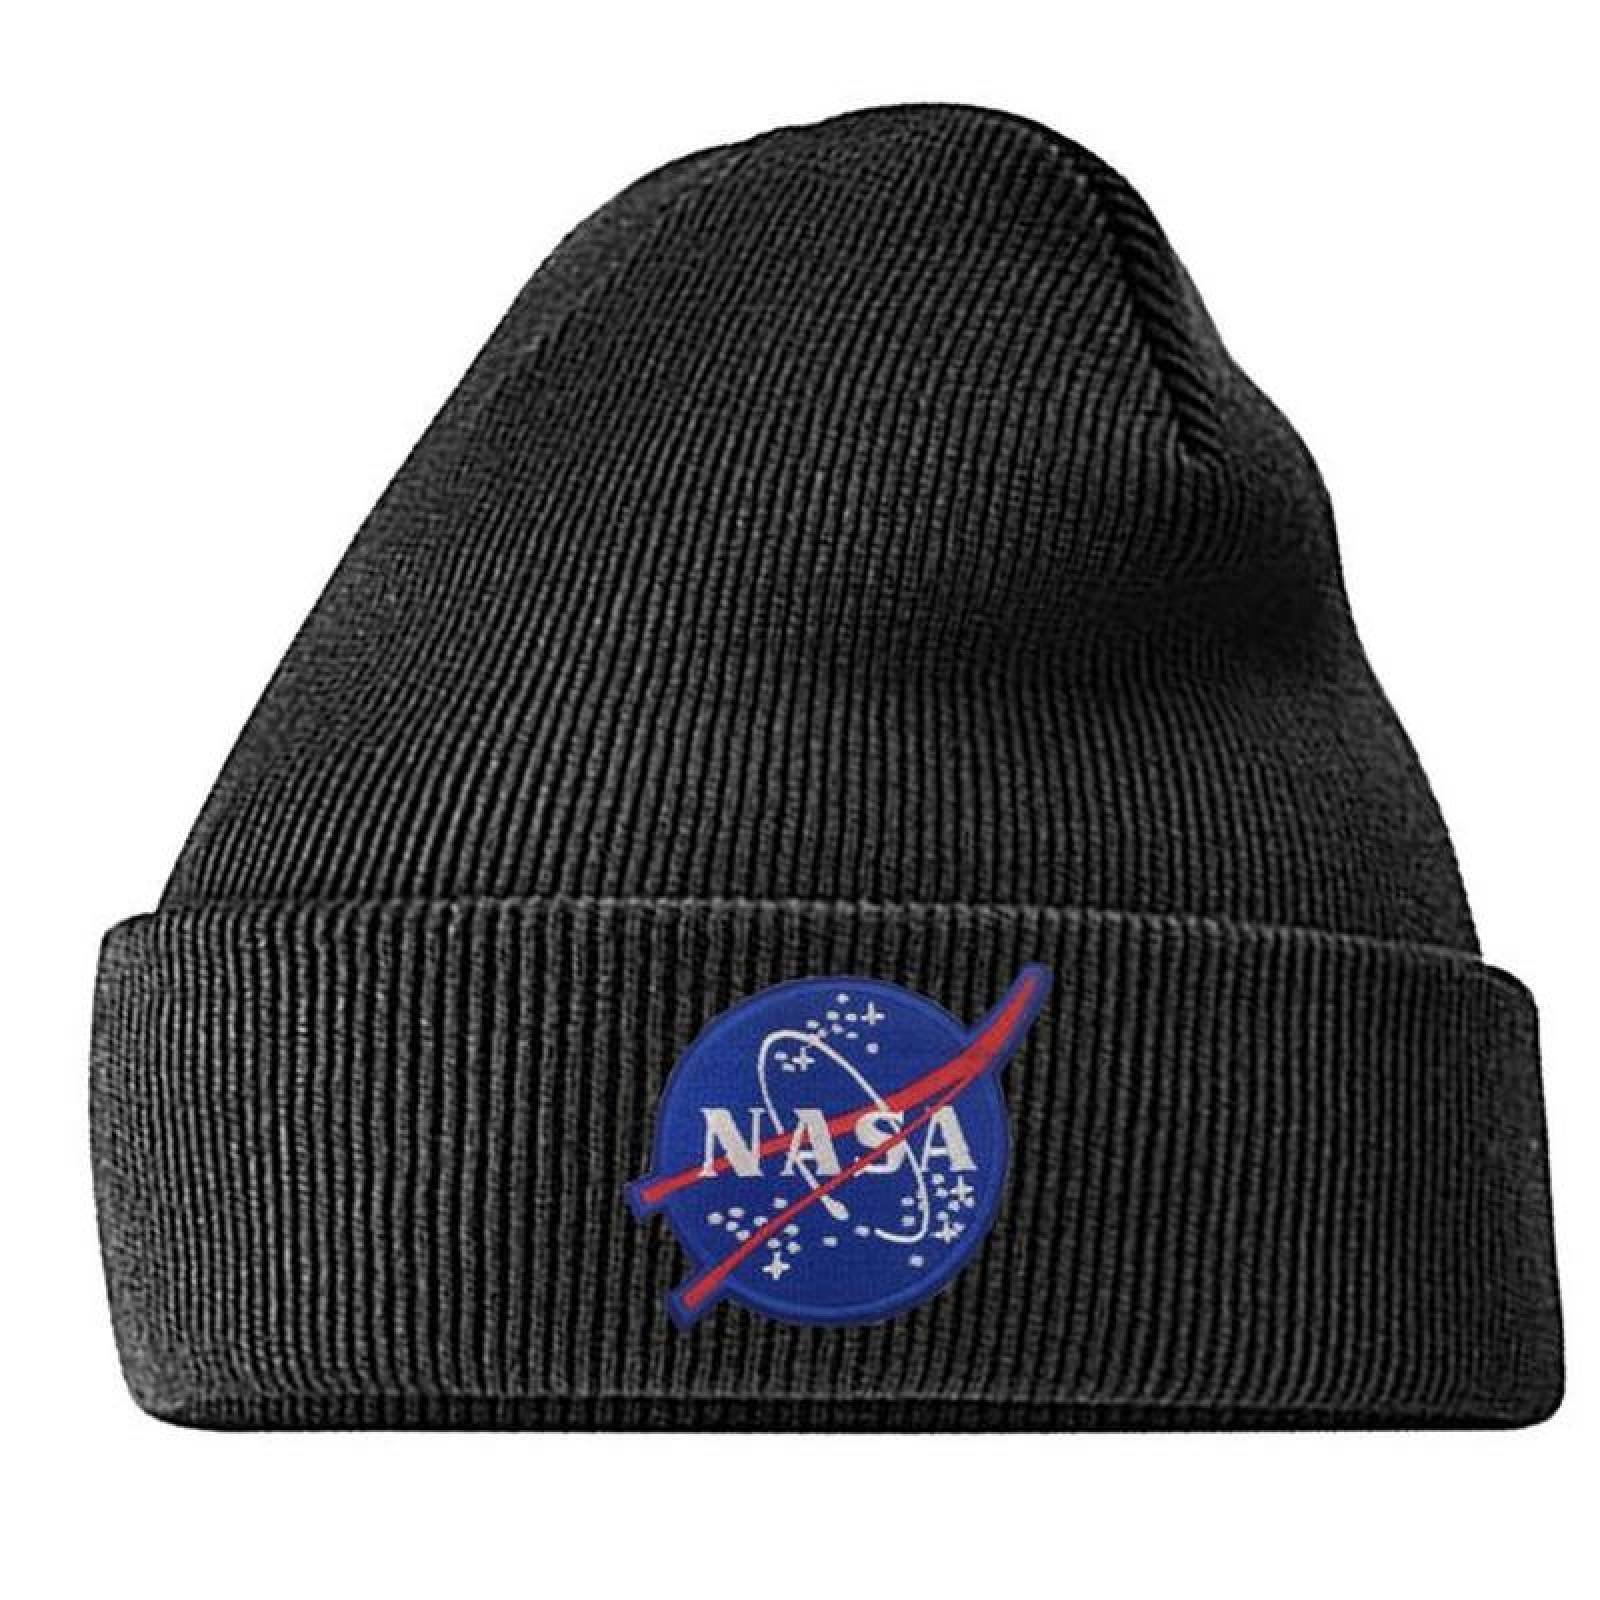 NASA Parche para Mochilas MXNAA-002-3 2 Parches Nasa 9,1x4,1cm Rojo Blanco  Bordado con Velcro, Nasa04